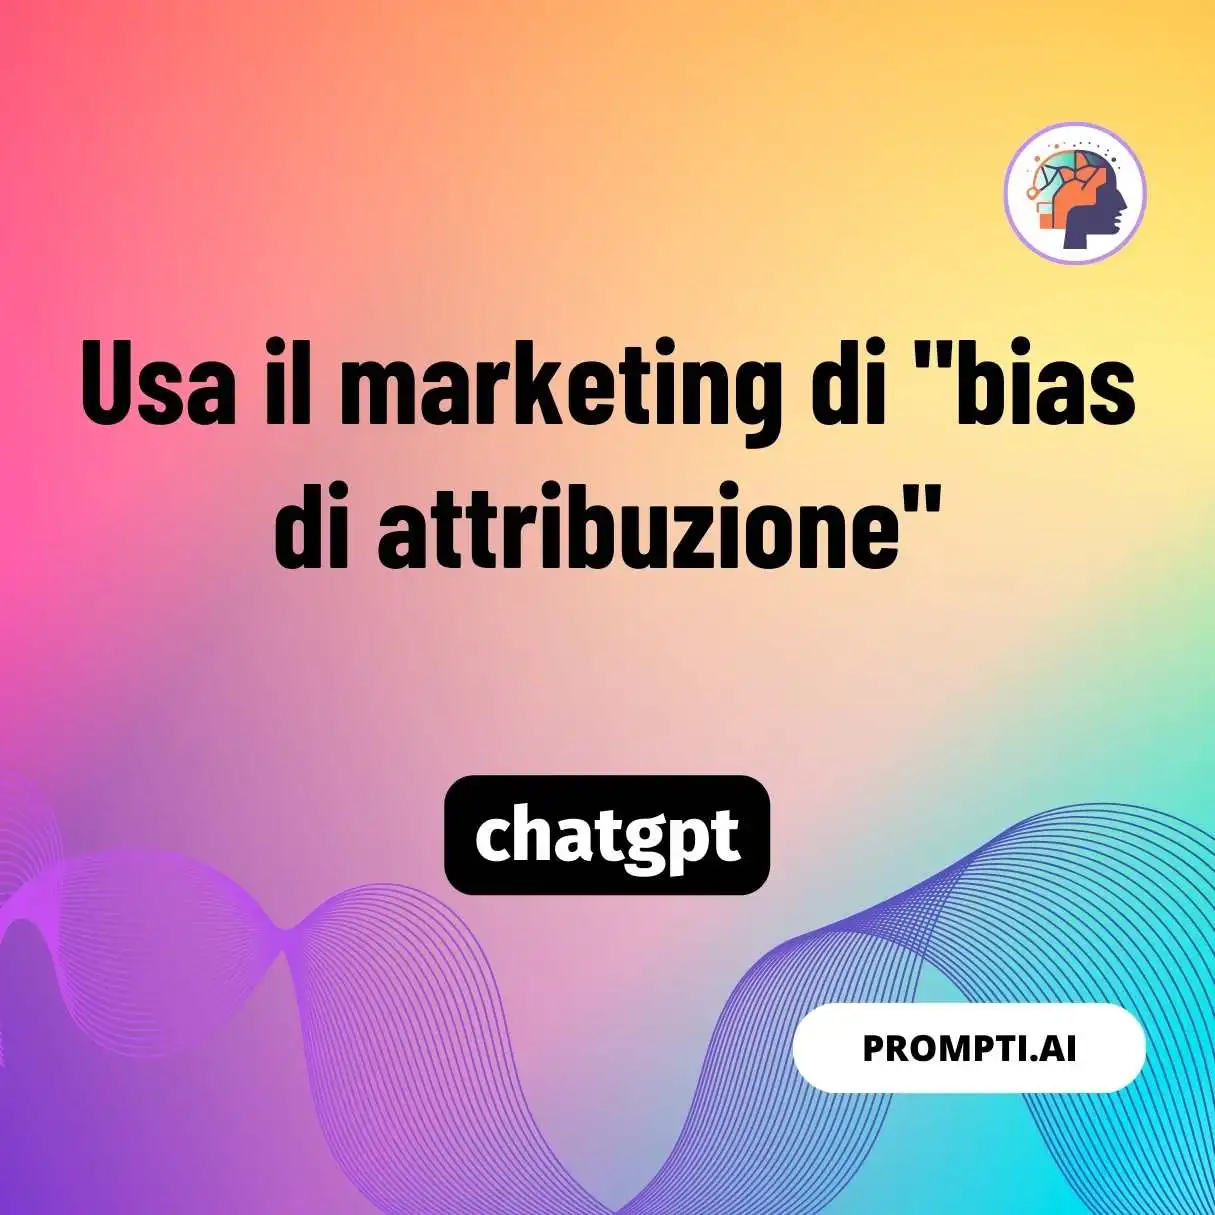 Usa il marketing di “bias di attribuzione”